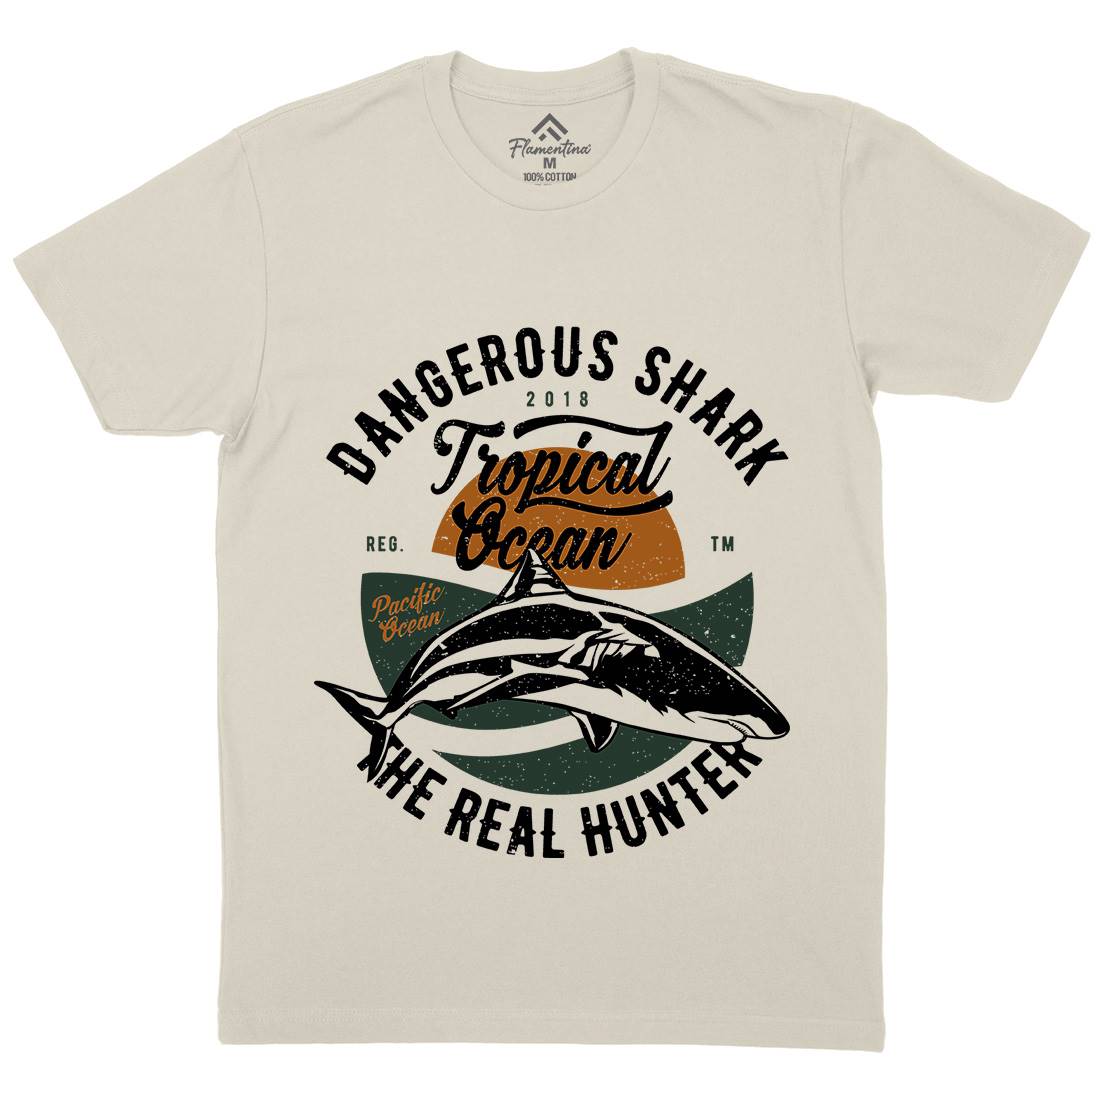 Dangerous Shark Mens Organic Crew Neck T-Shirt Navy A643